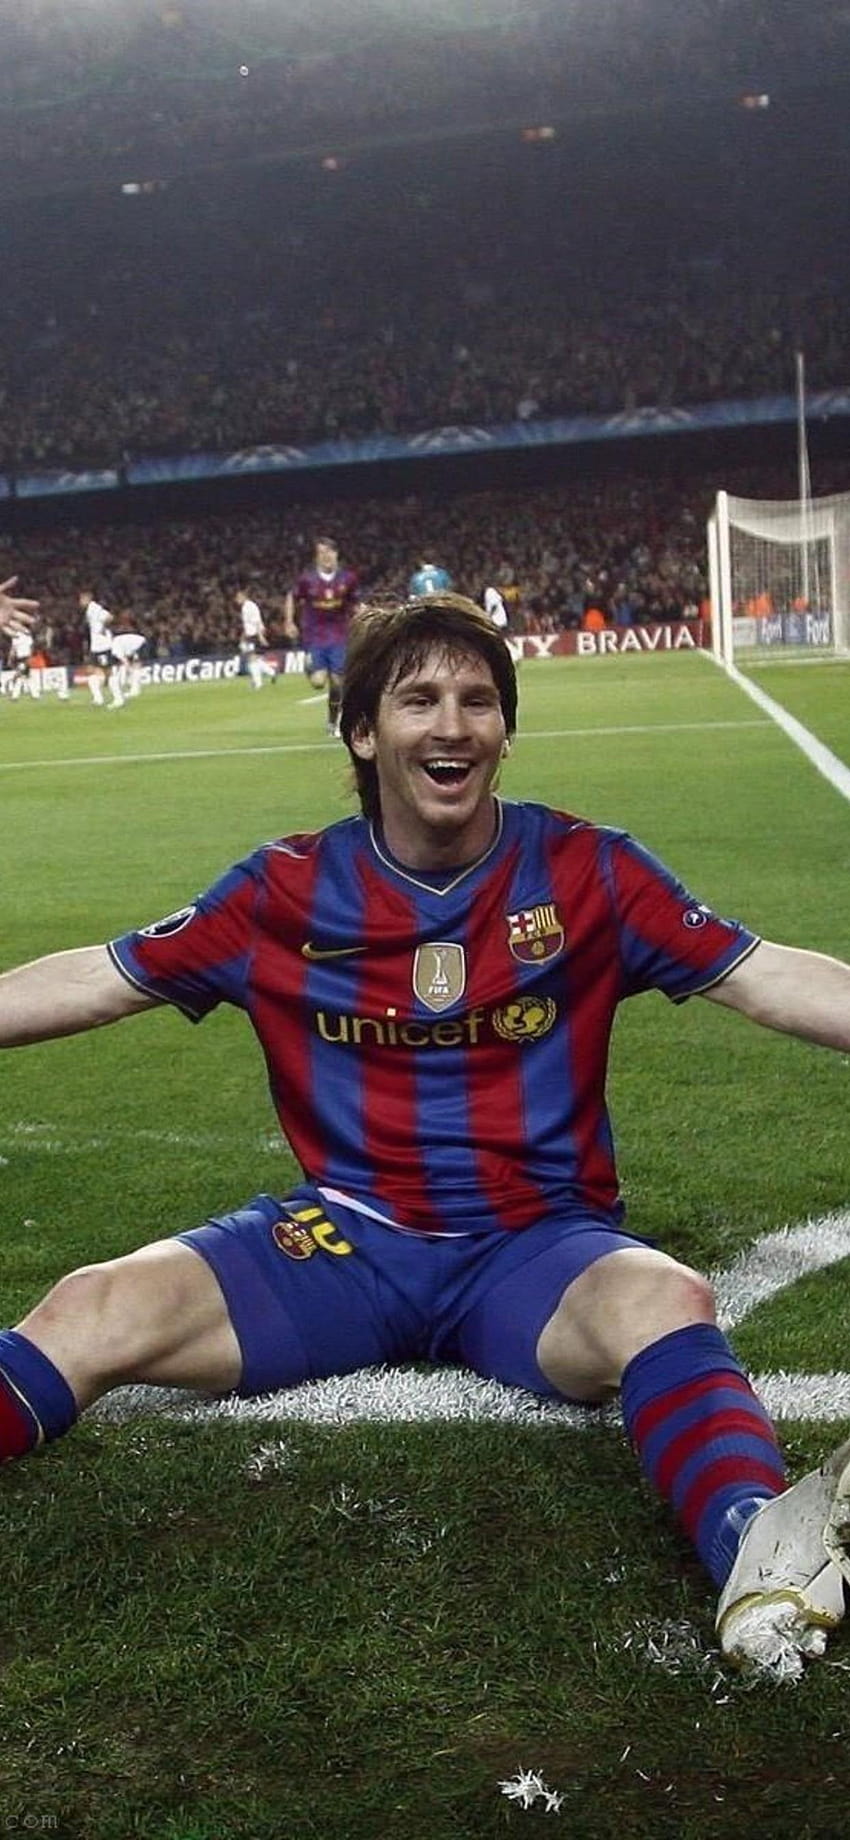 Bức ảnh nền iPhone của Messi sẽ khiến điện thoại của bạn trở nên độc đáo và ấn tượng! Với Messi chơi bóng đá đỉnh cao và đẳng cấp, bức ảnh nền iPhone sẽ giúp bạn trở thành một người hâm mộ cuồng nhiệt của anh ấy!